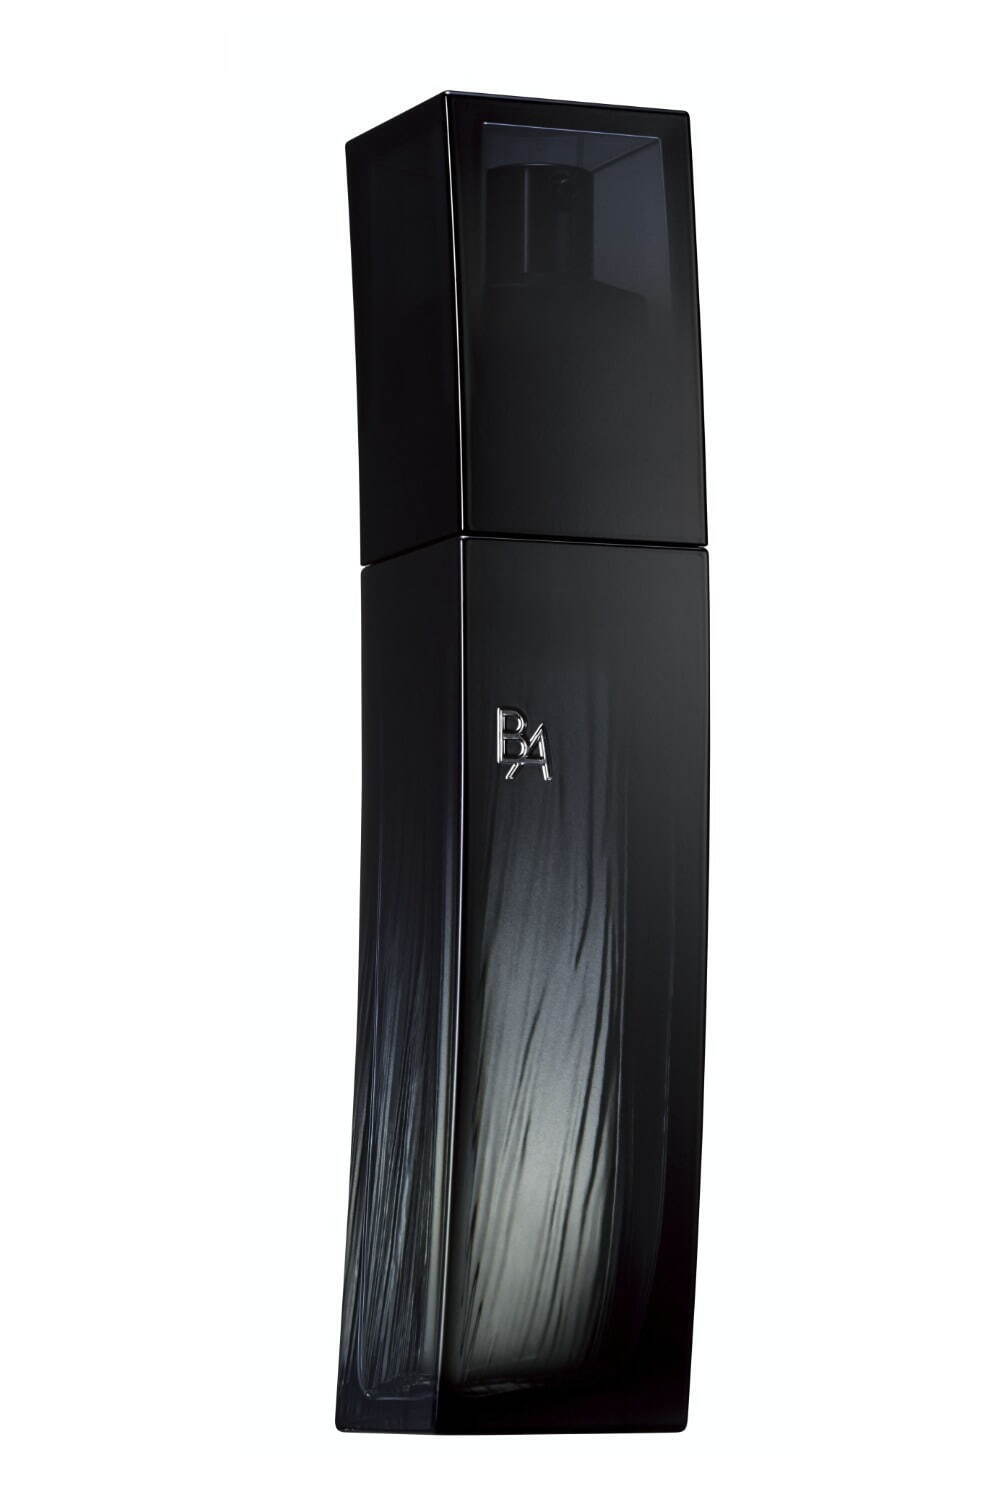 ポーラ最高峰ブランド「B.A」22年春スキンケア、“糖化汗”着目の新化粧 